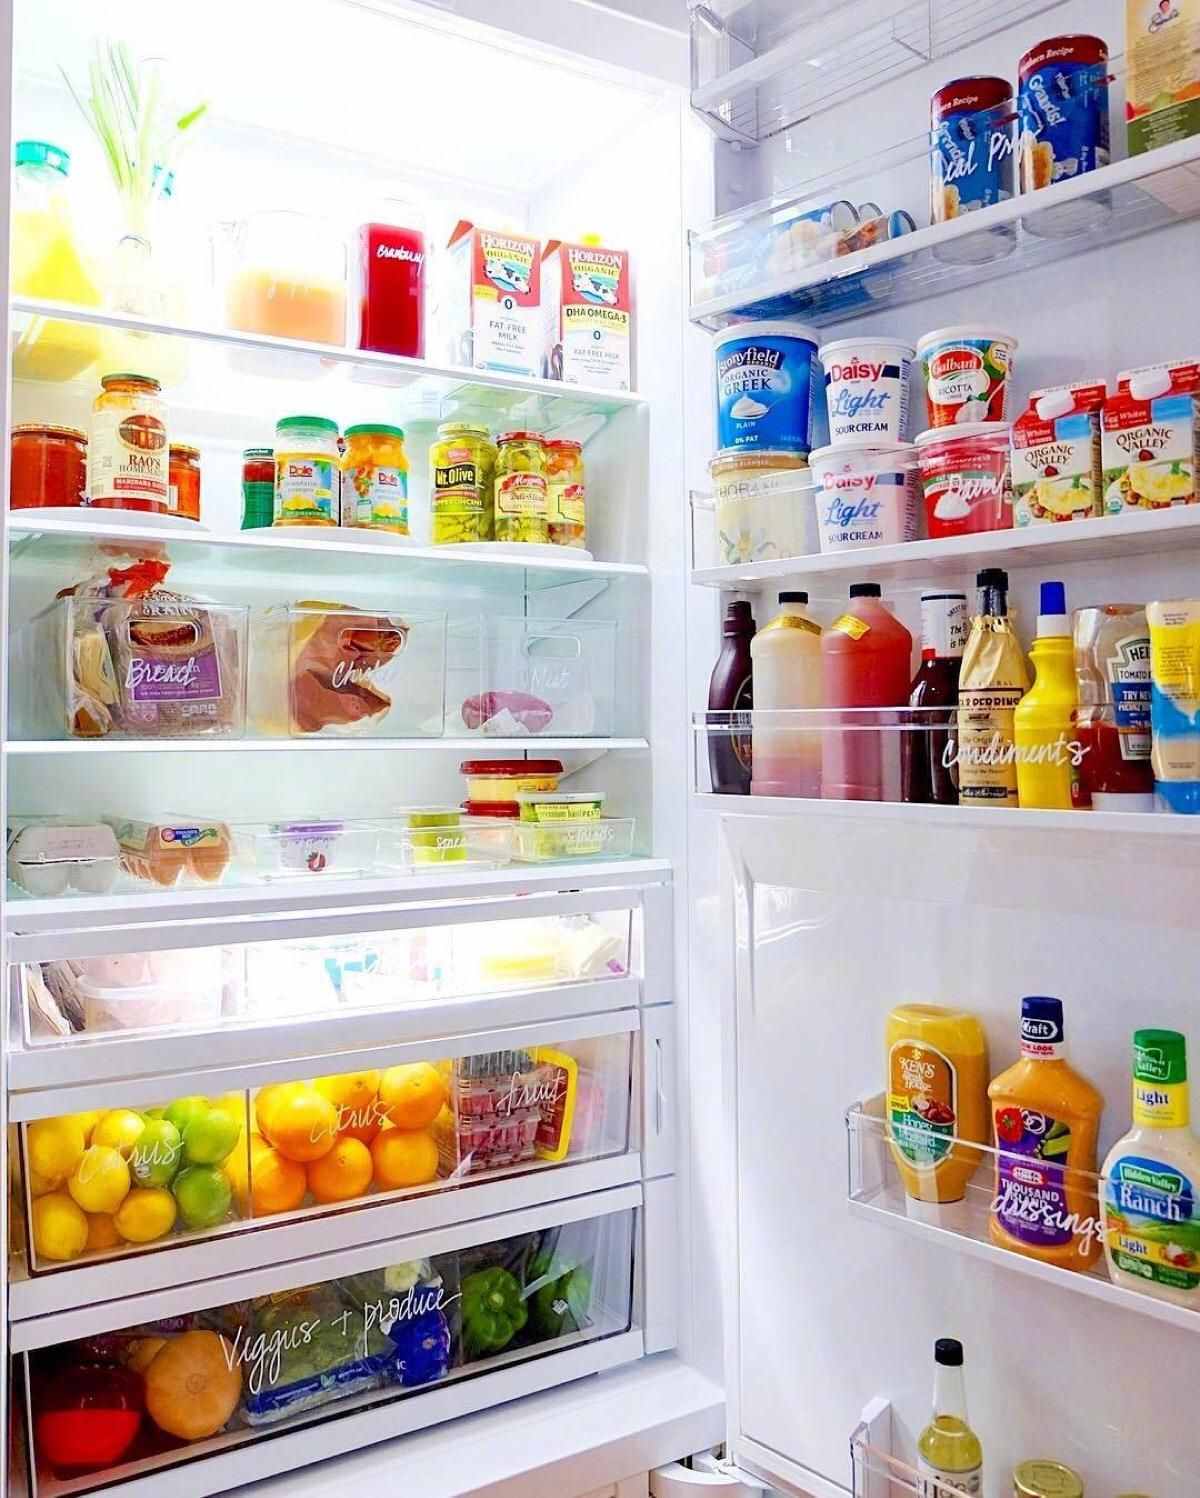 冰箱档位数字越大，冰箱内的温度越低，为什么夏天建议使用1档？